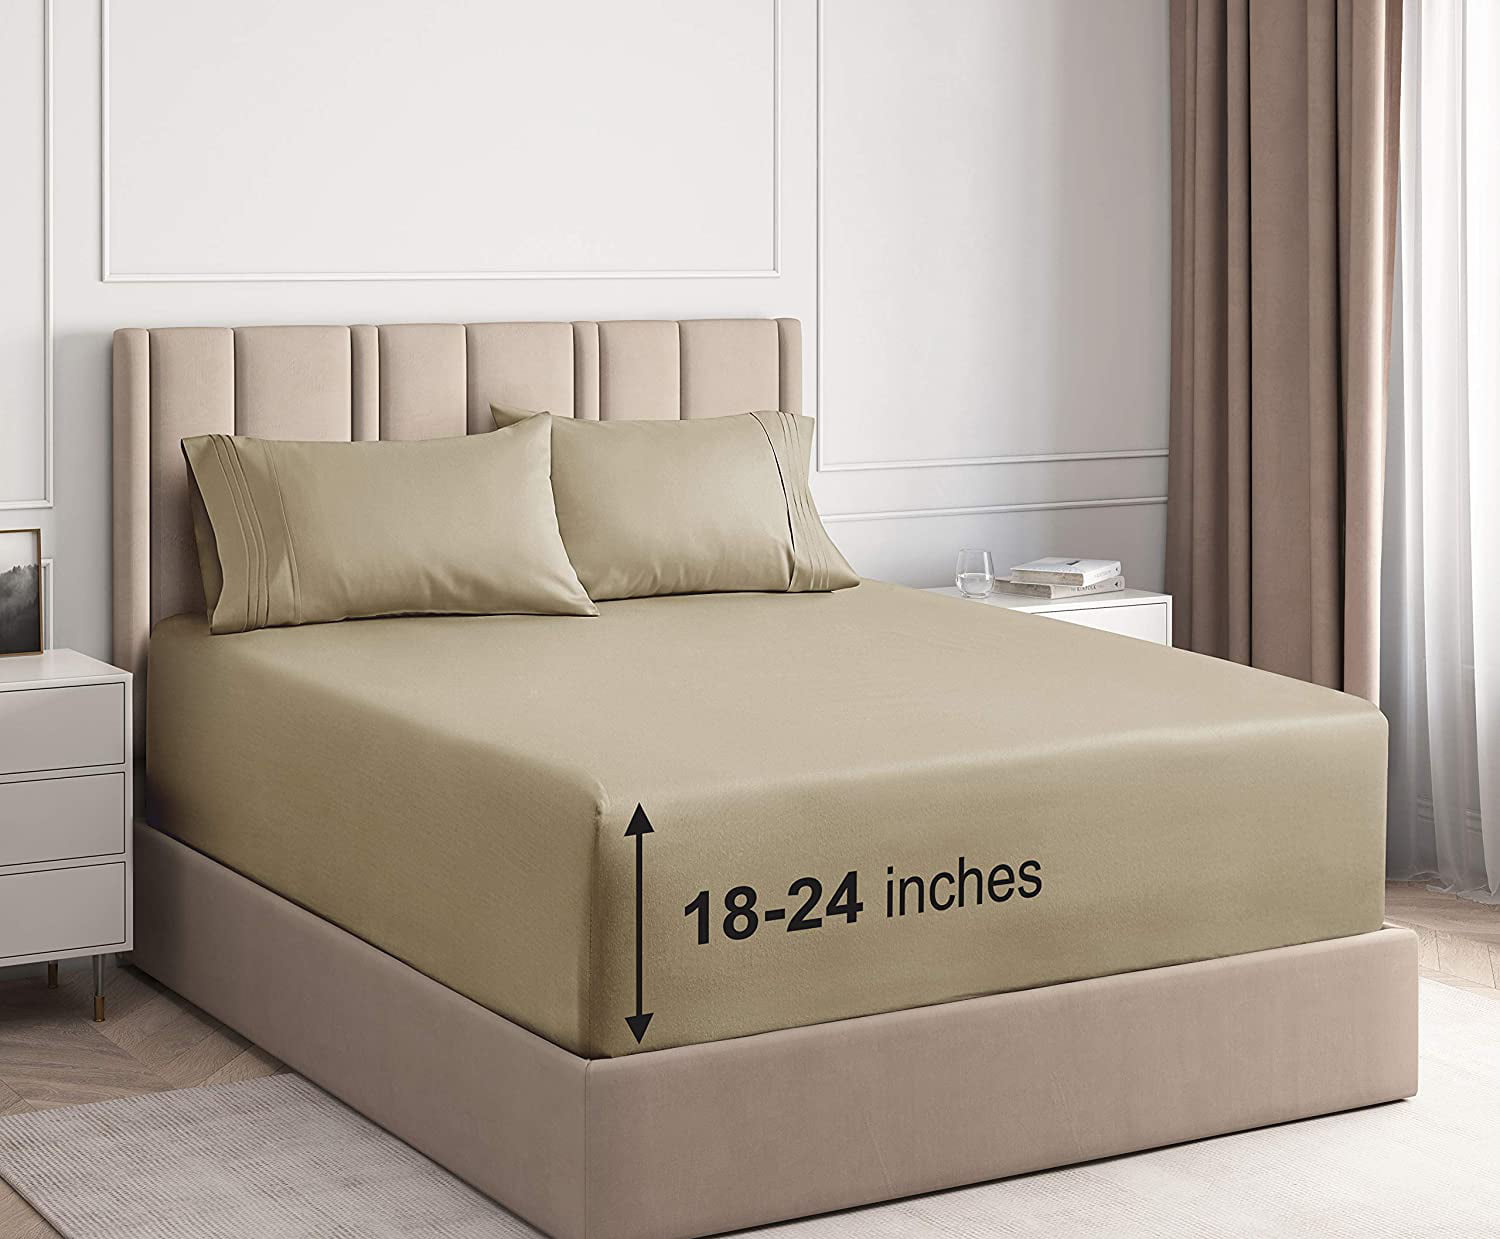 12 inch deep mattress cover